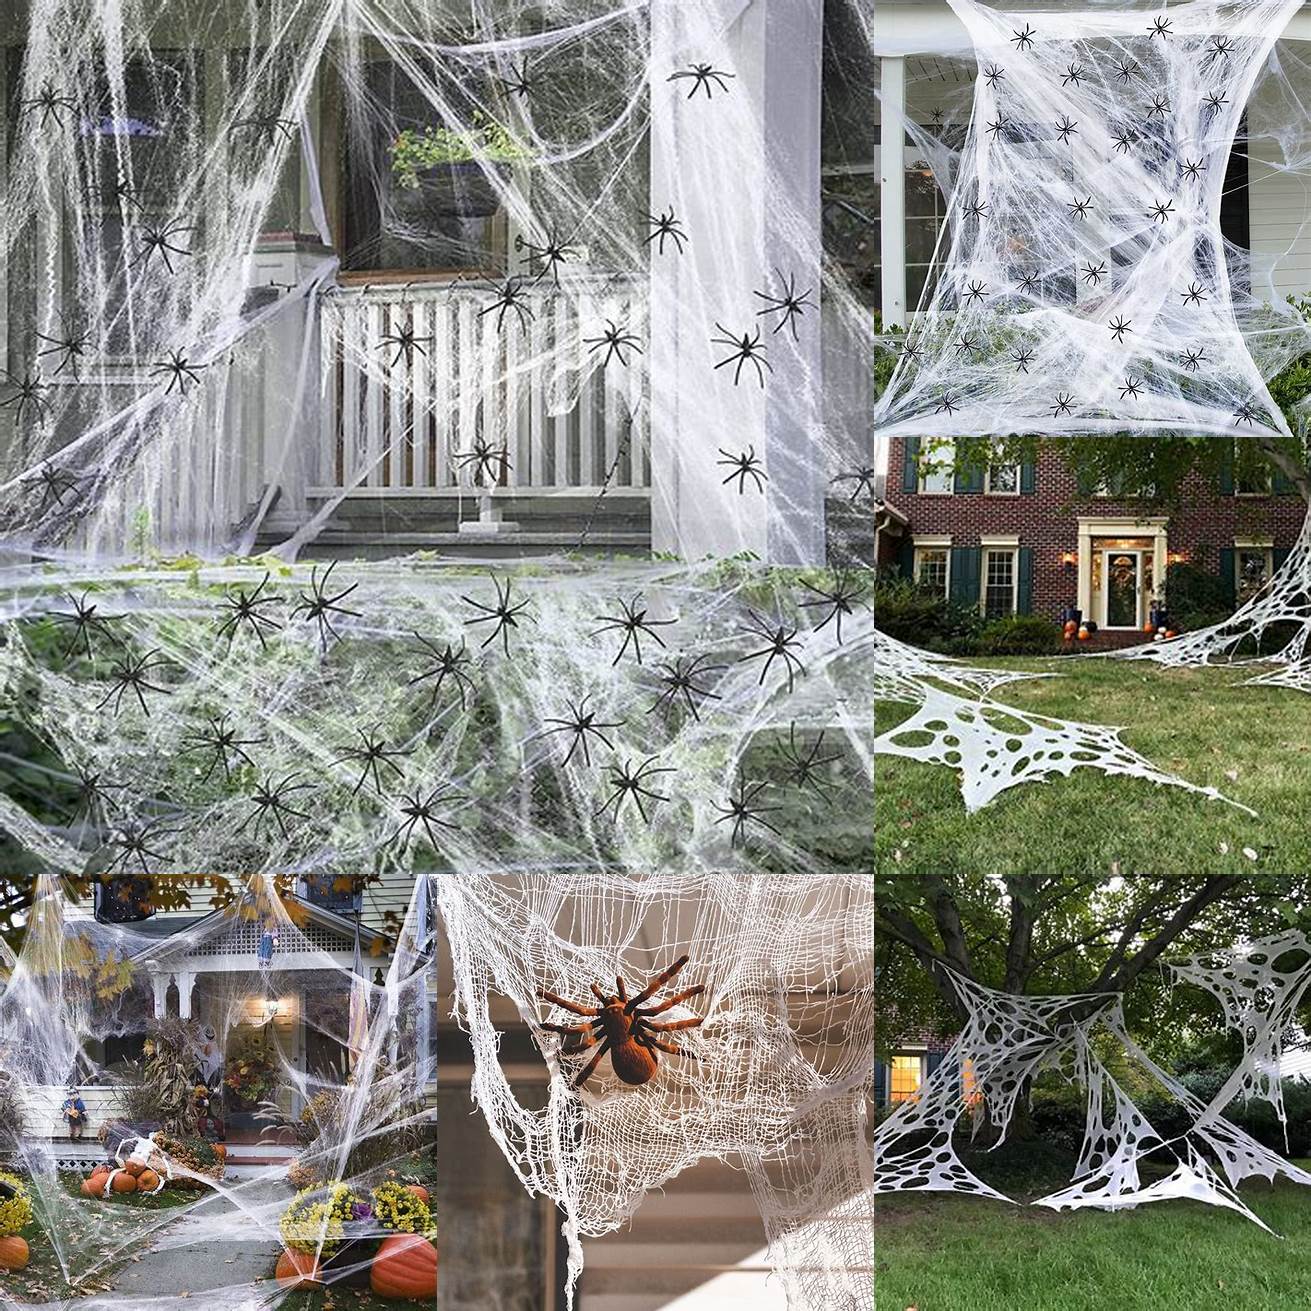 Fake spiderwebs